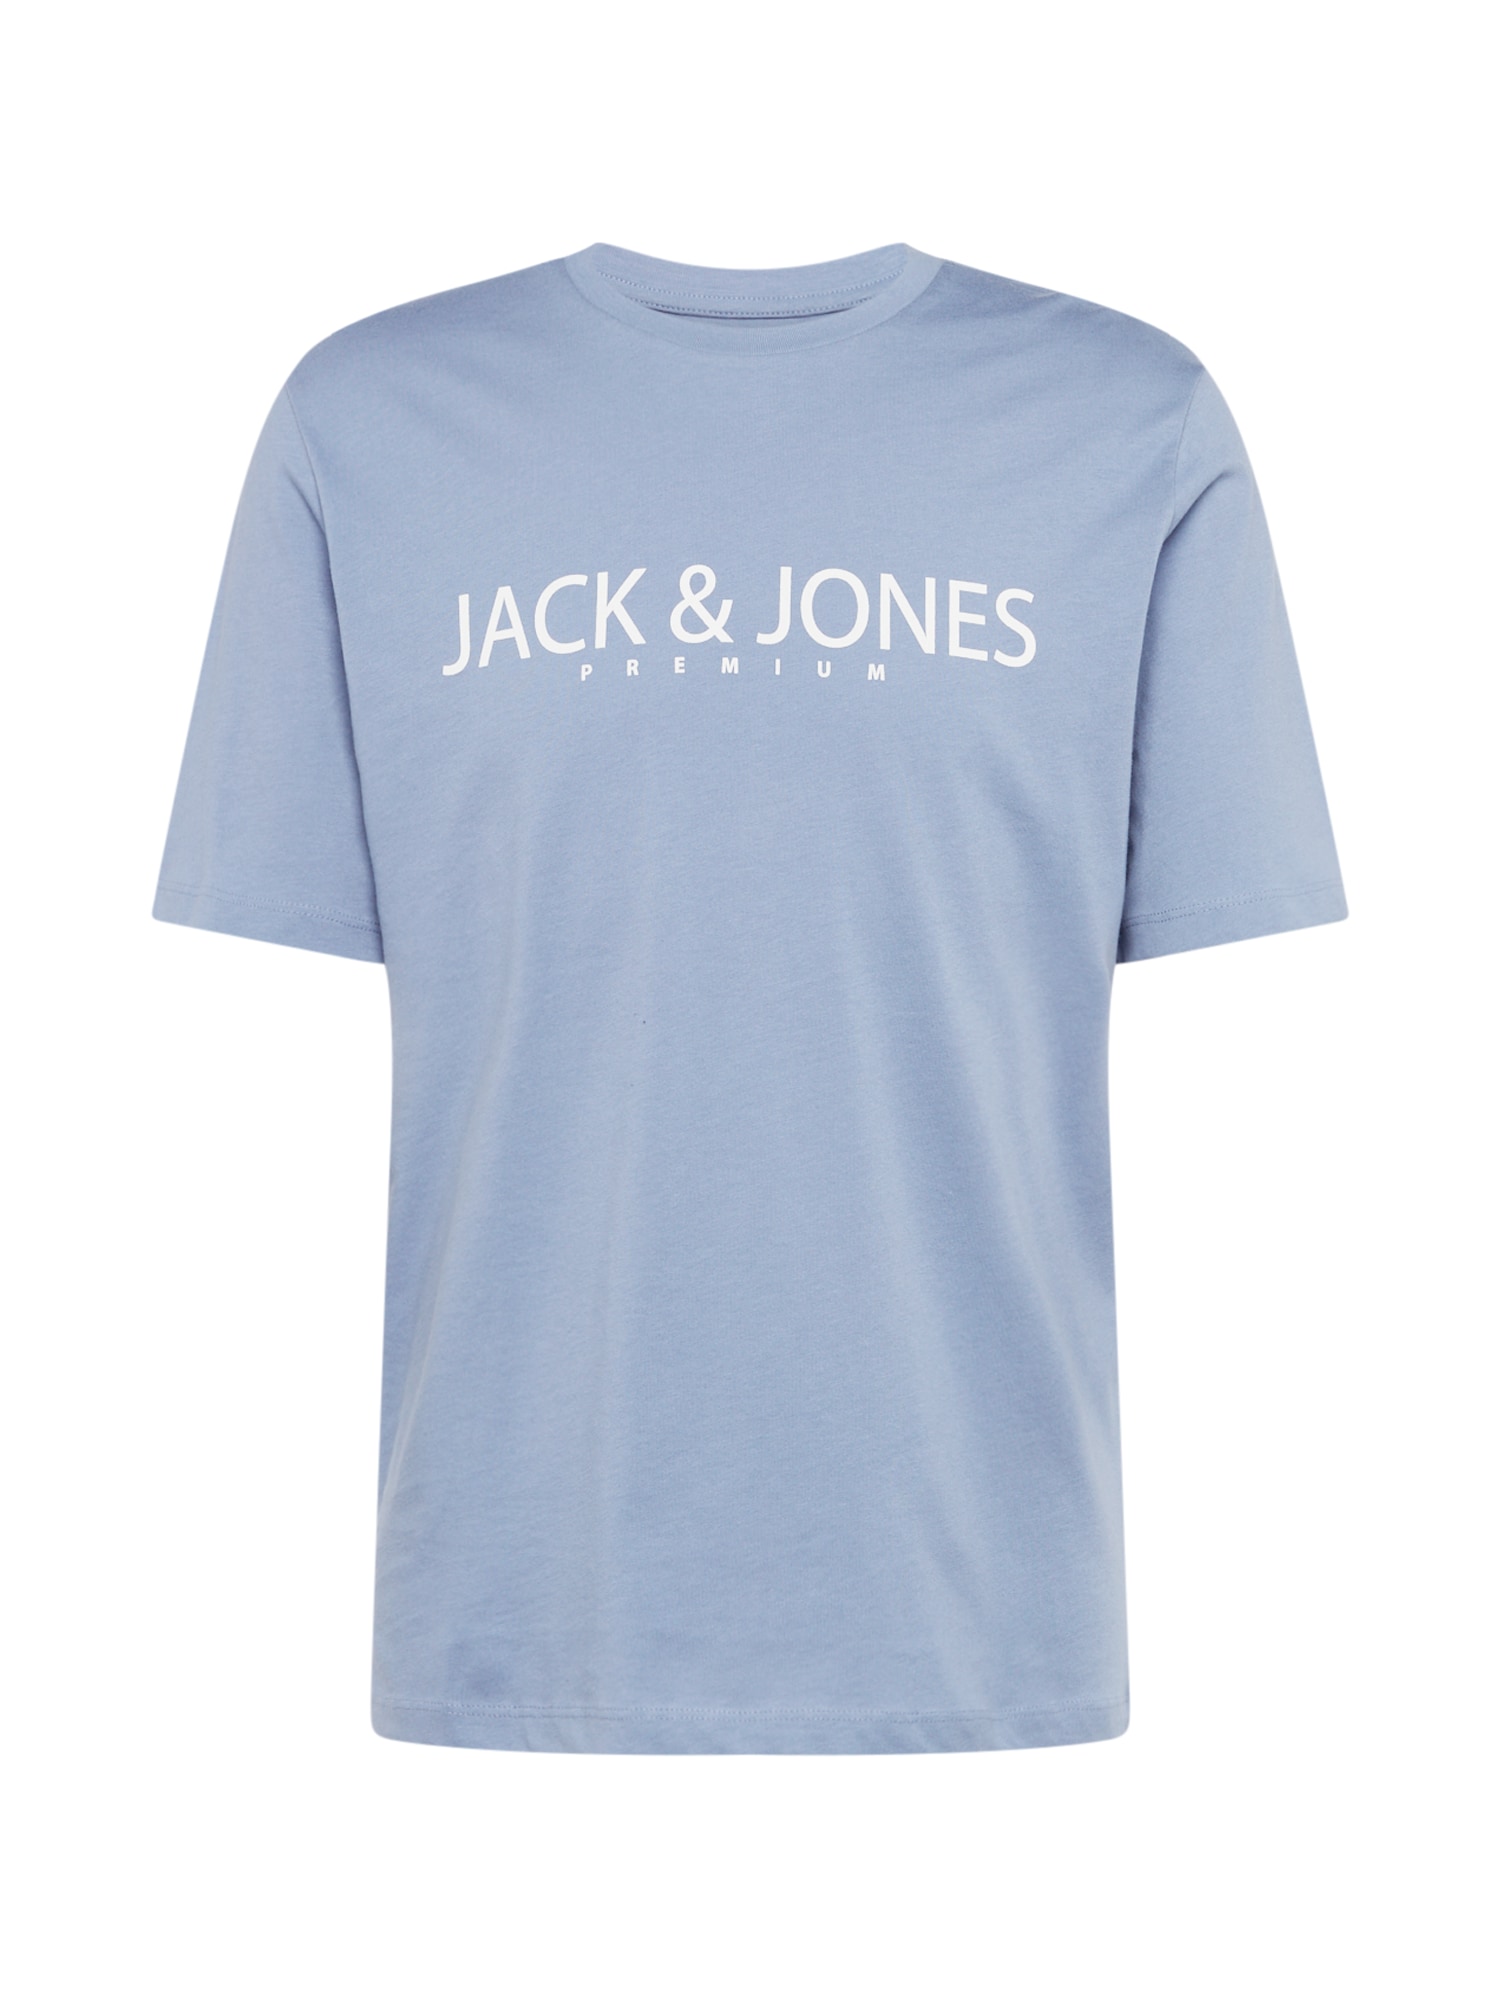 JACK & JONES Marškinėliai 'Bla Jack' šviesiai mėlyna / balta